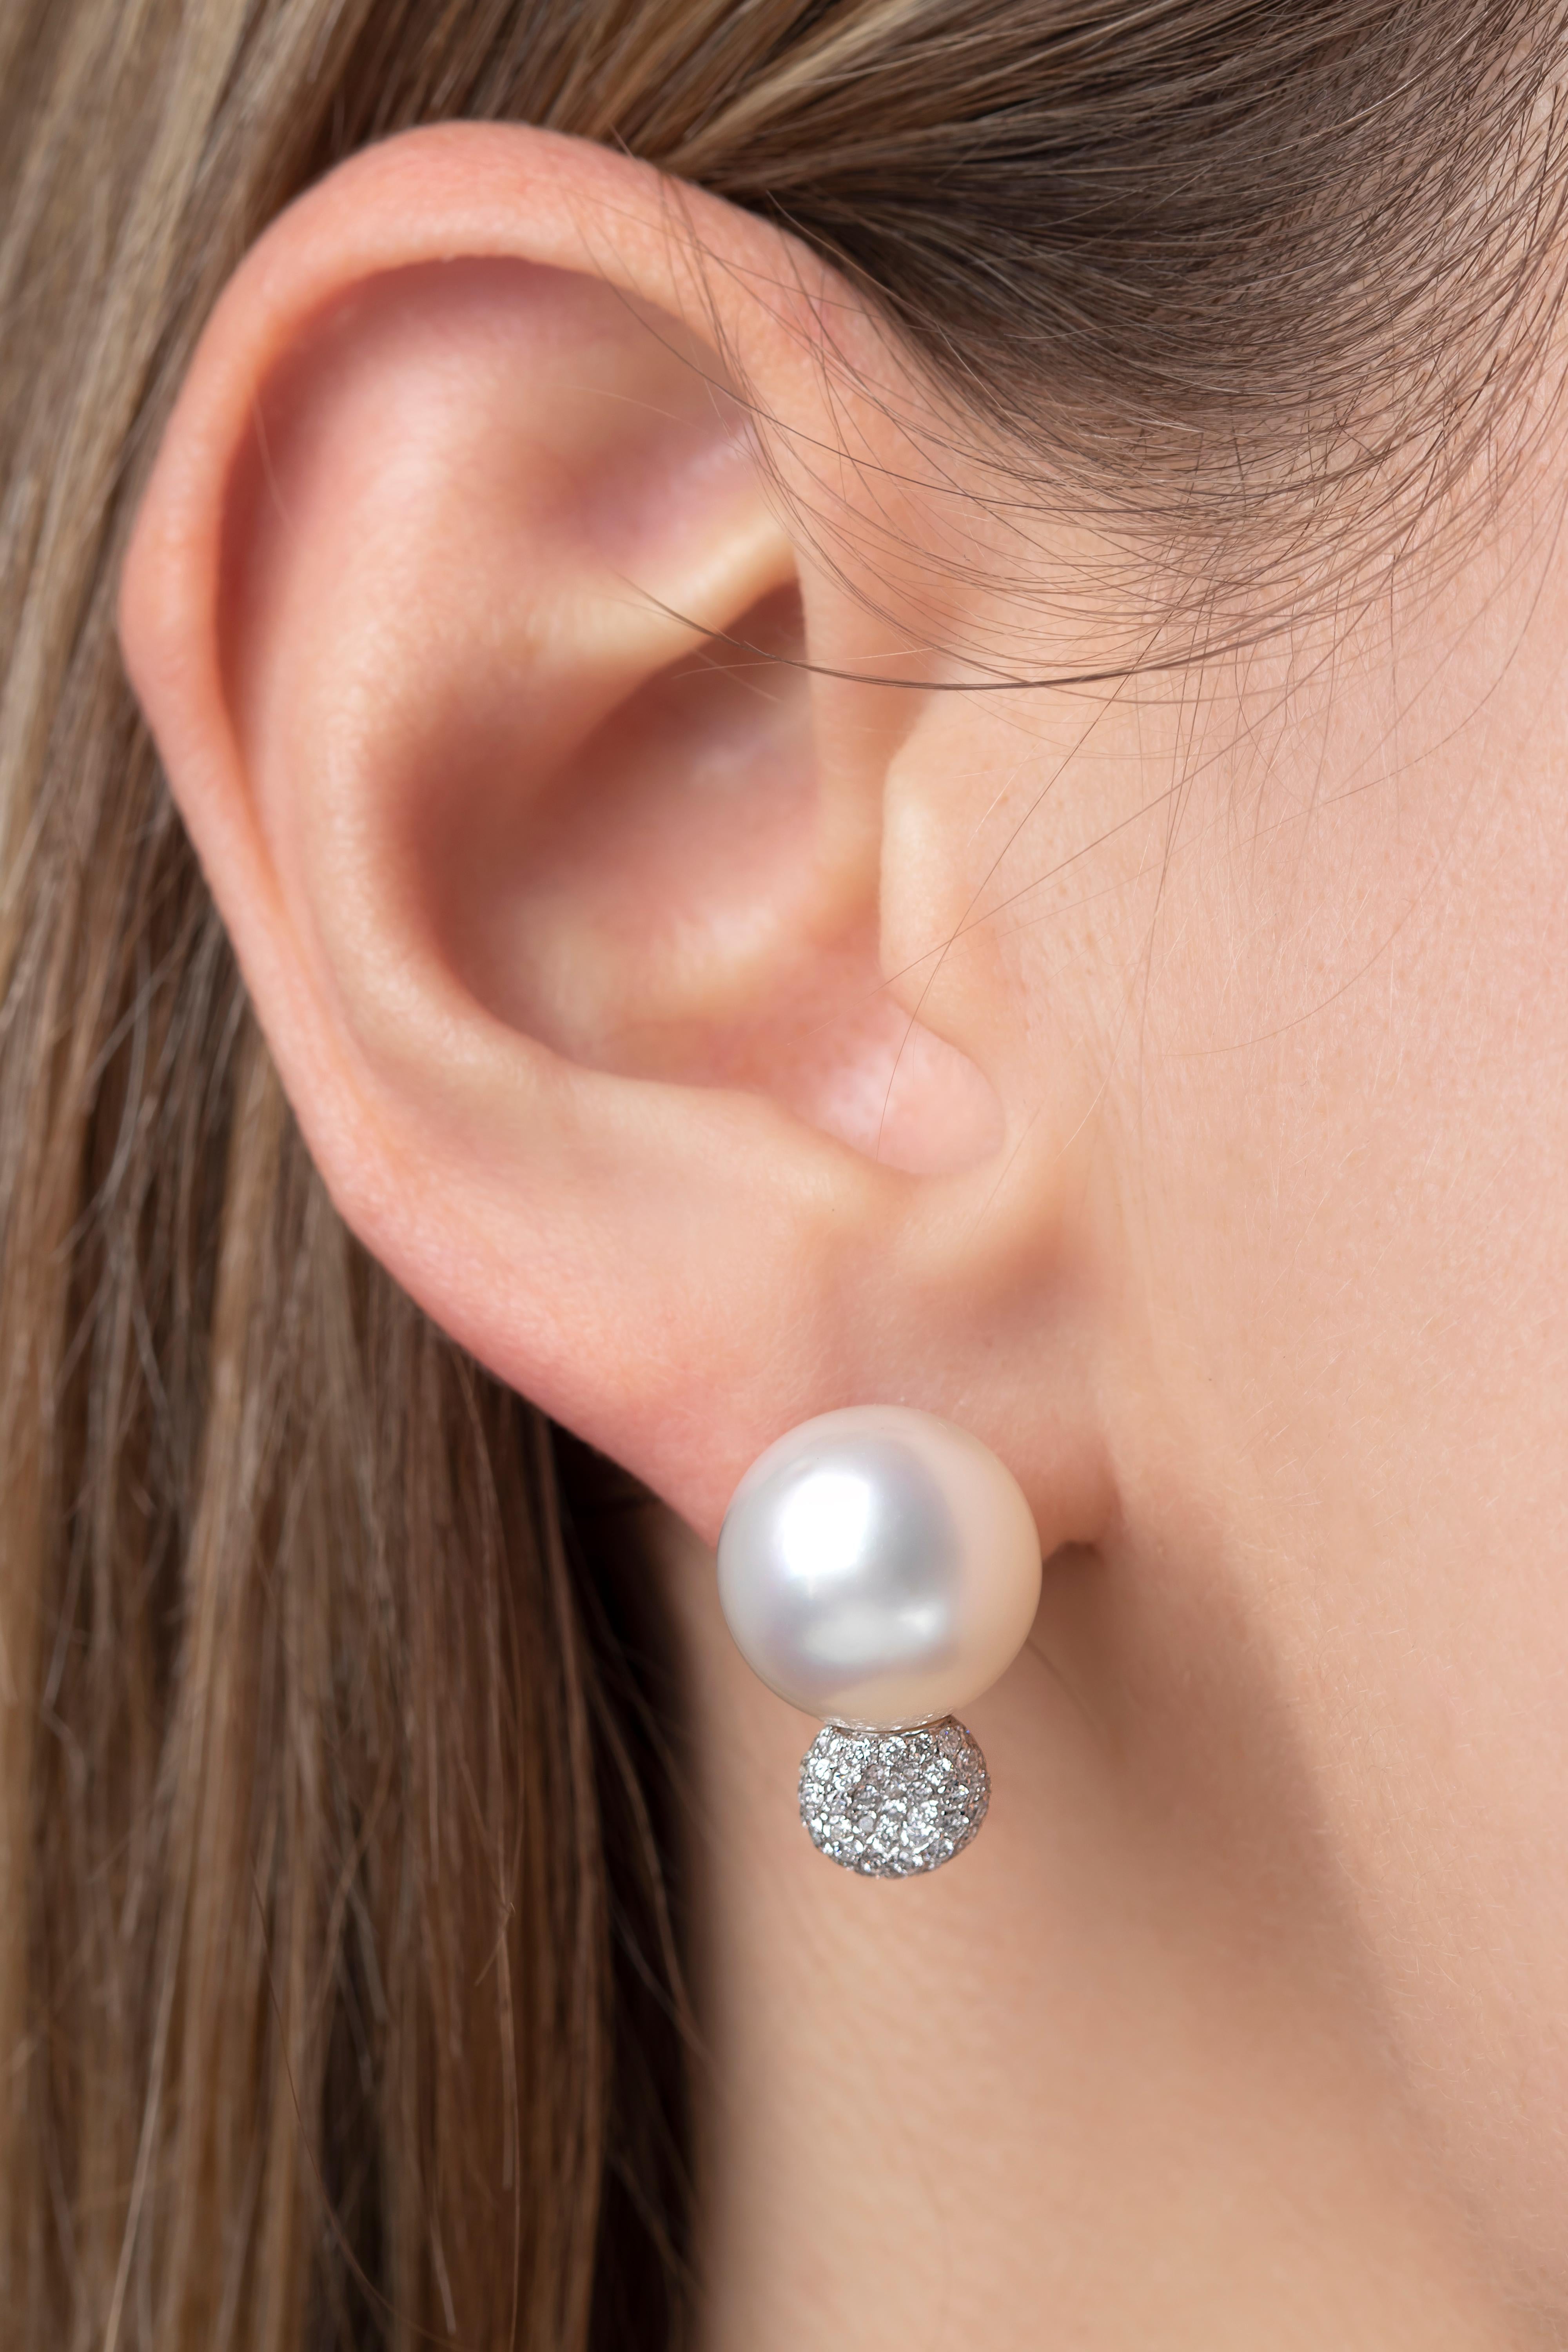 Ces élégantes boucles d'oreilles de Yoko London Pearls présentent des perles des mers du Sud lustrées au sommet d'une grappe de diamants éblouissants. Serties d'or blanc 18 carats pour rehausser l'éclat des perles et des diamants, ces boucles